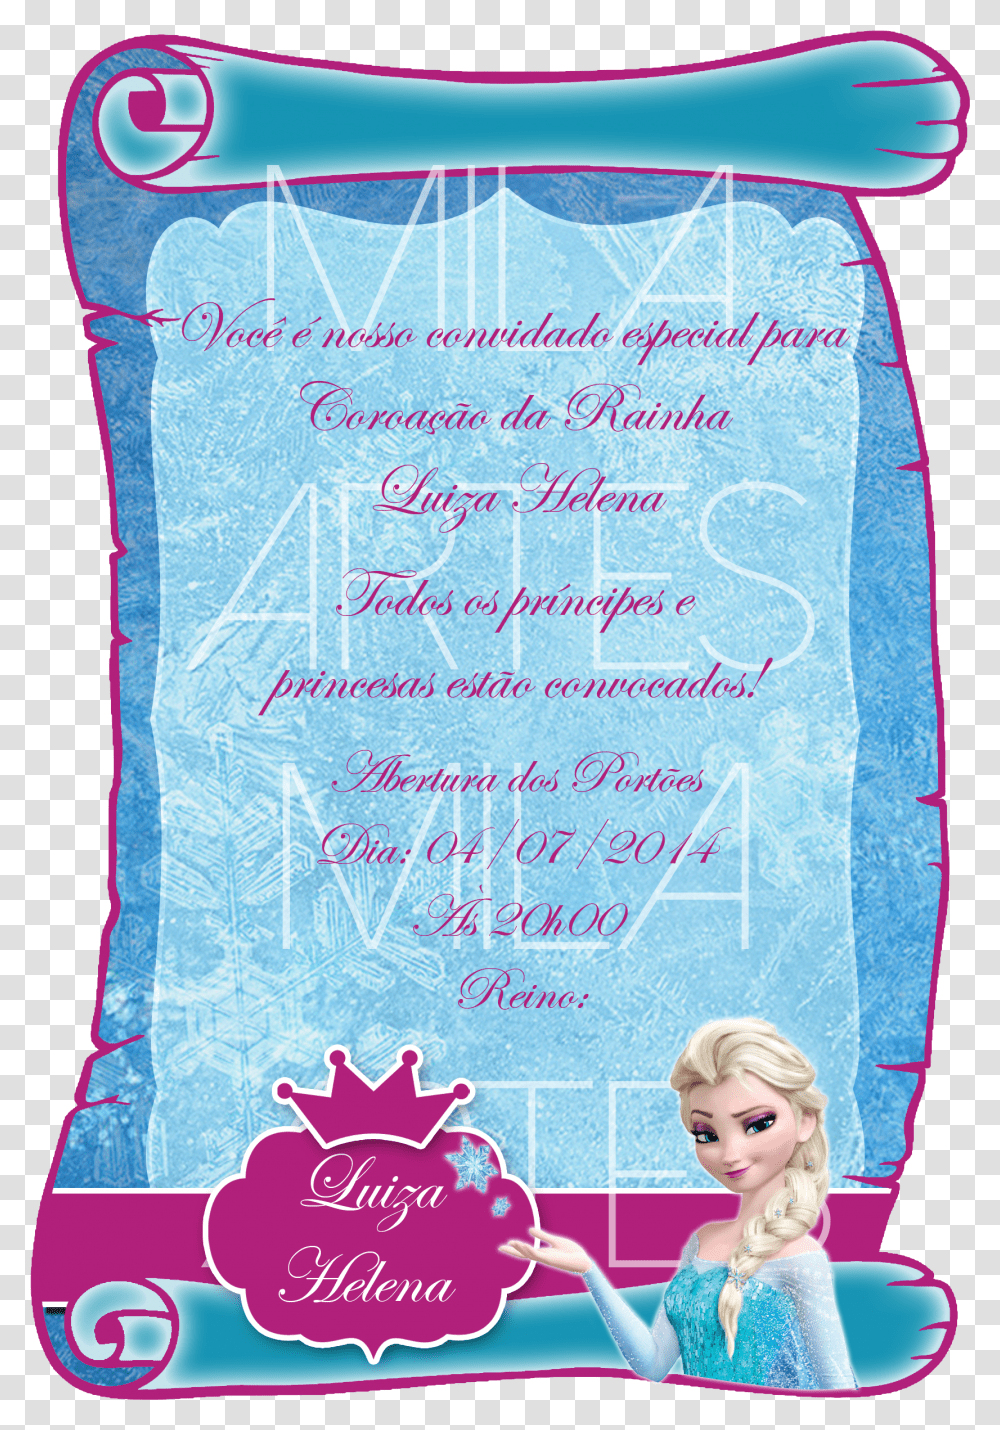 Clip Art Convite Frozen Convite Da Frozen Personalizado Transparent Png